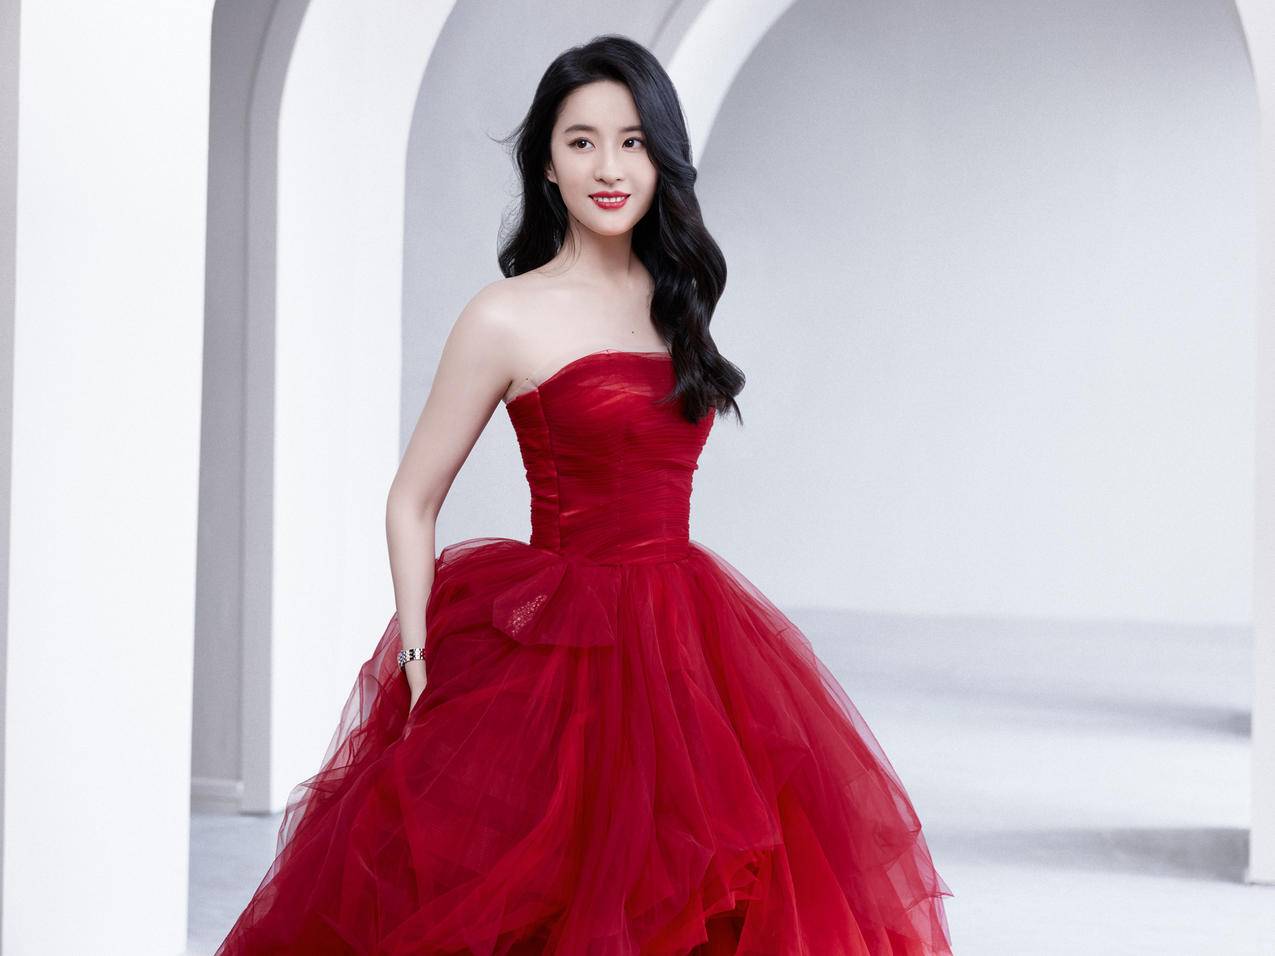 刘亦菲 红色礼服裙子美女iPad平板电脑壁纸